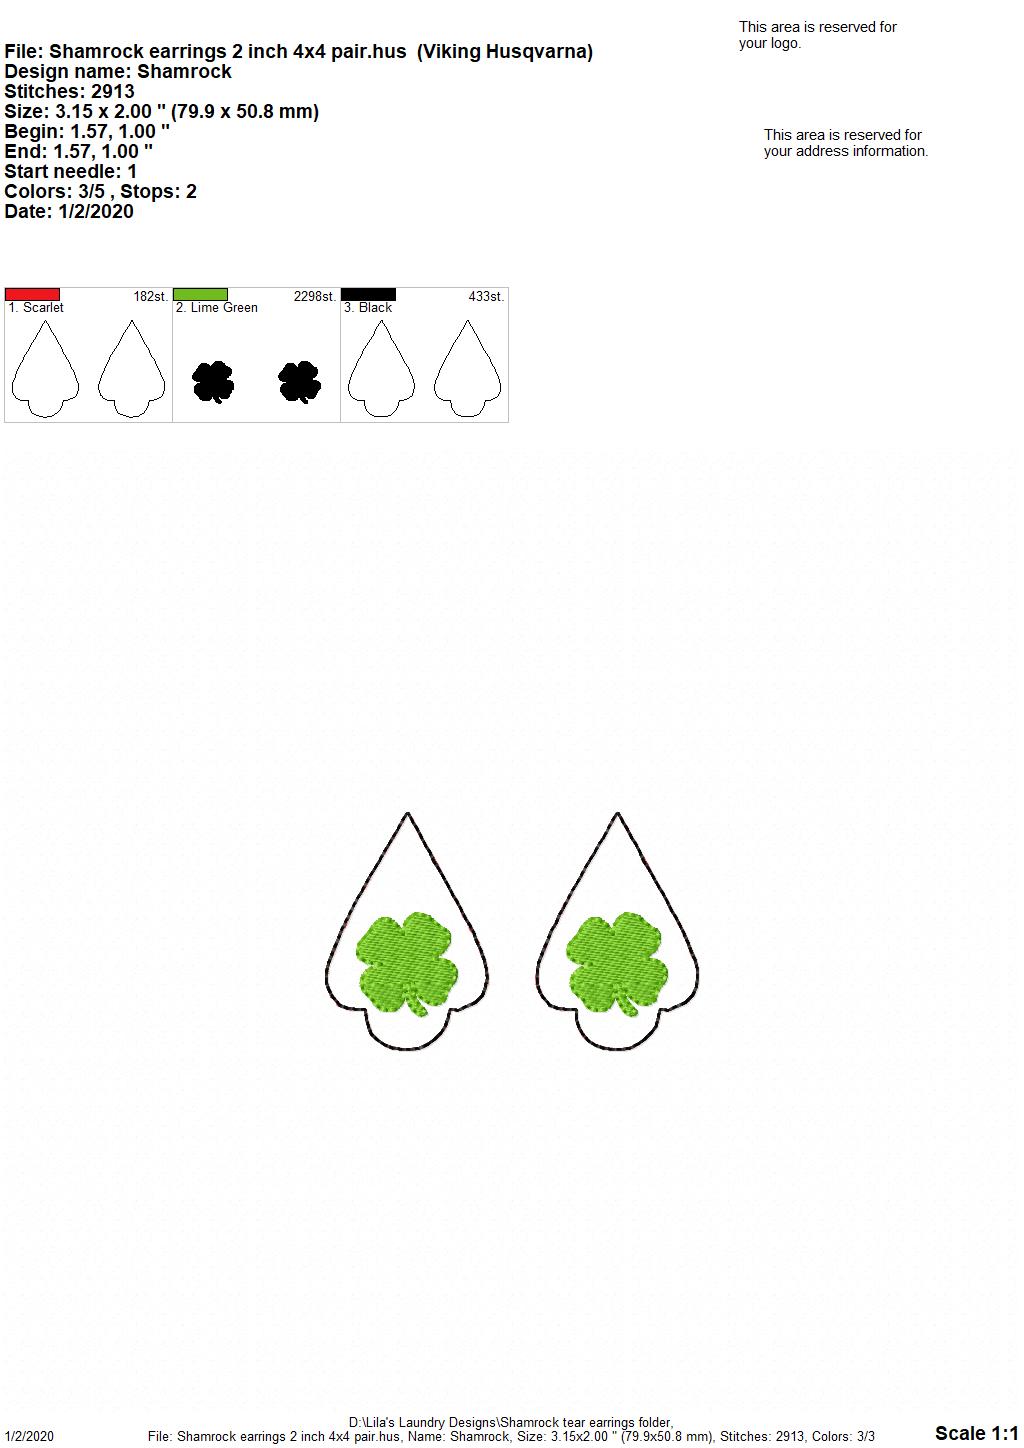 Shamrock Tear Drop Earrings - 3 sizes - Digital Embroidery Design